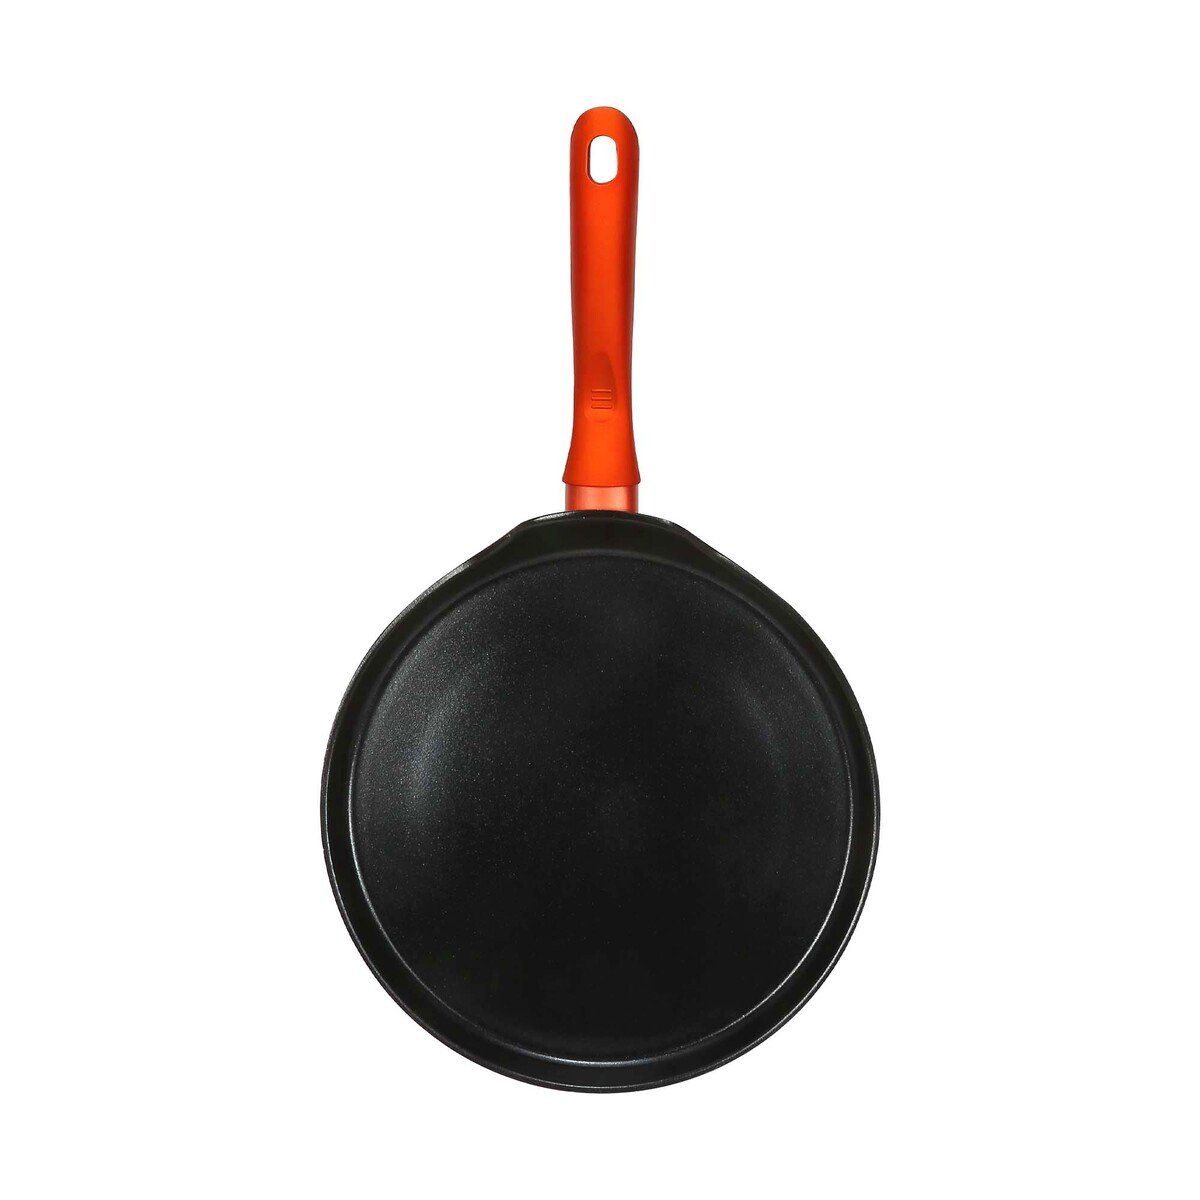 Chefline Ceramic Crepe Pan, 26 cm, Black, DJ26